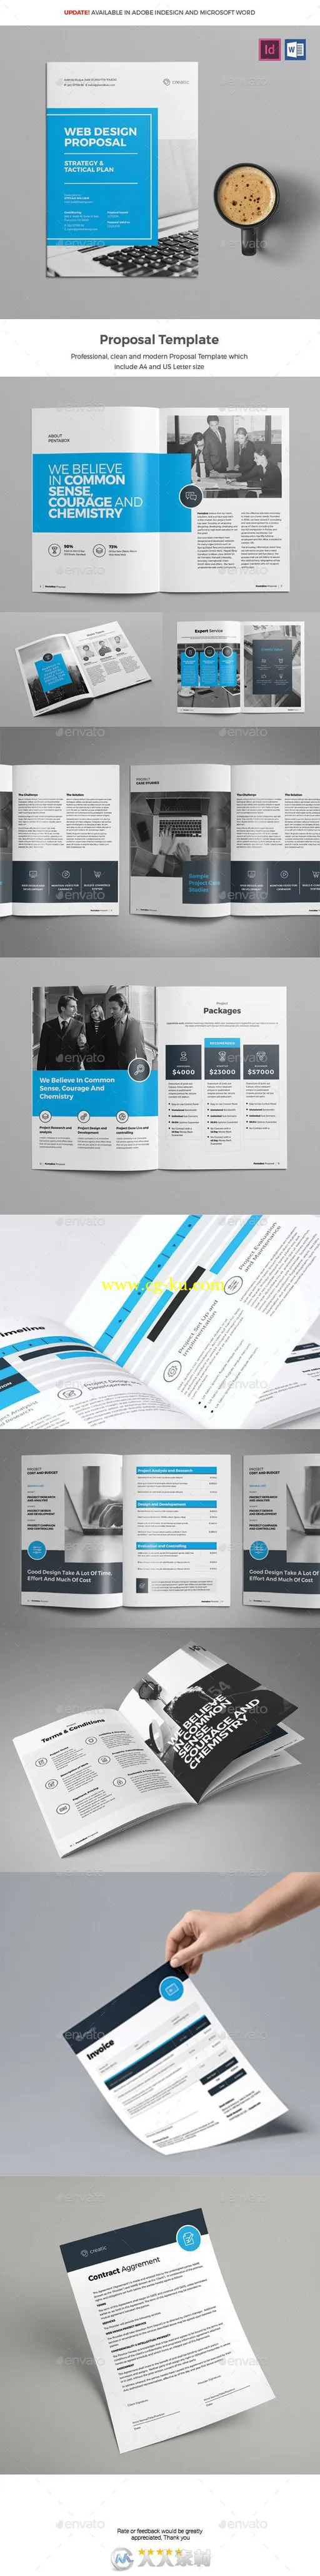 创意企业网站设计建议书indesign排版模板的图片2